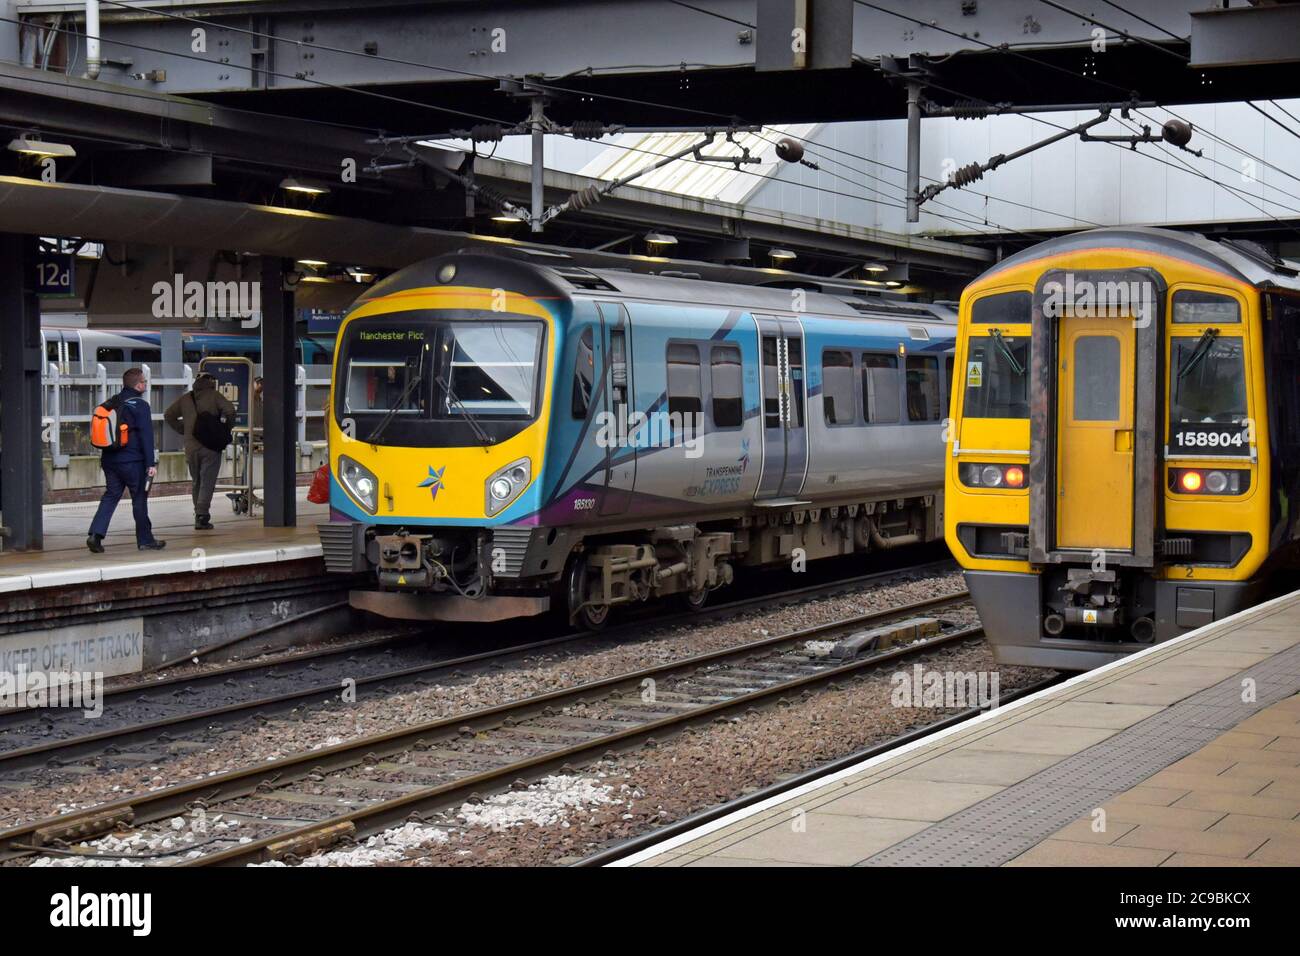 A TransPennine Express Class 185 Desiro DMU sits alongside a Northern Trains Class 158 Express DMU at Leeds station Stock Photo